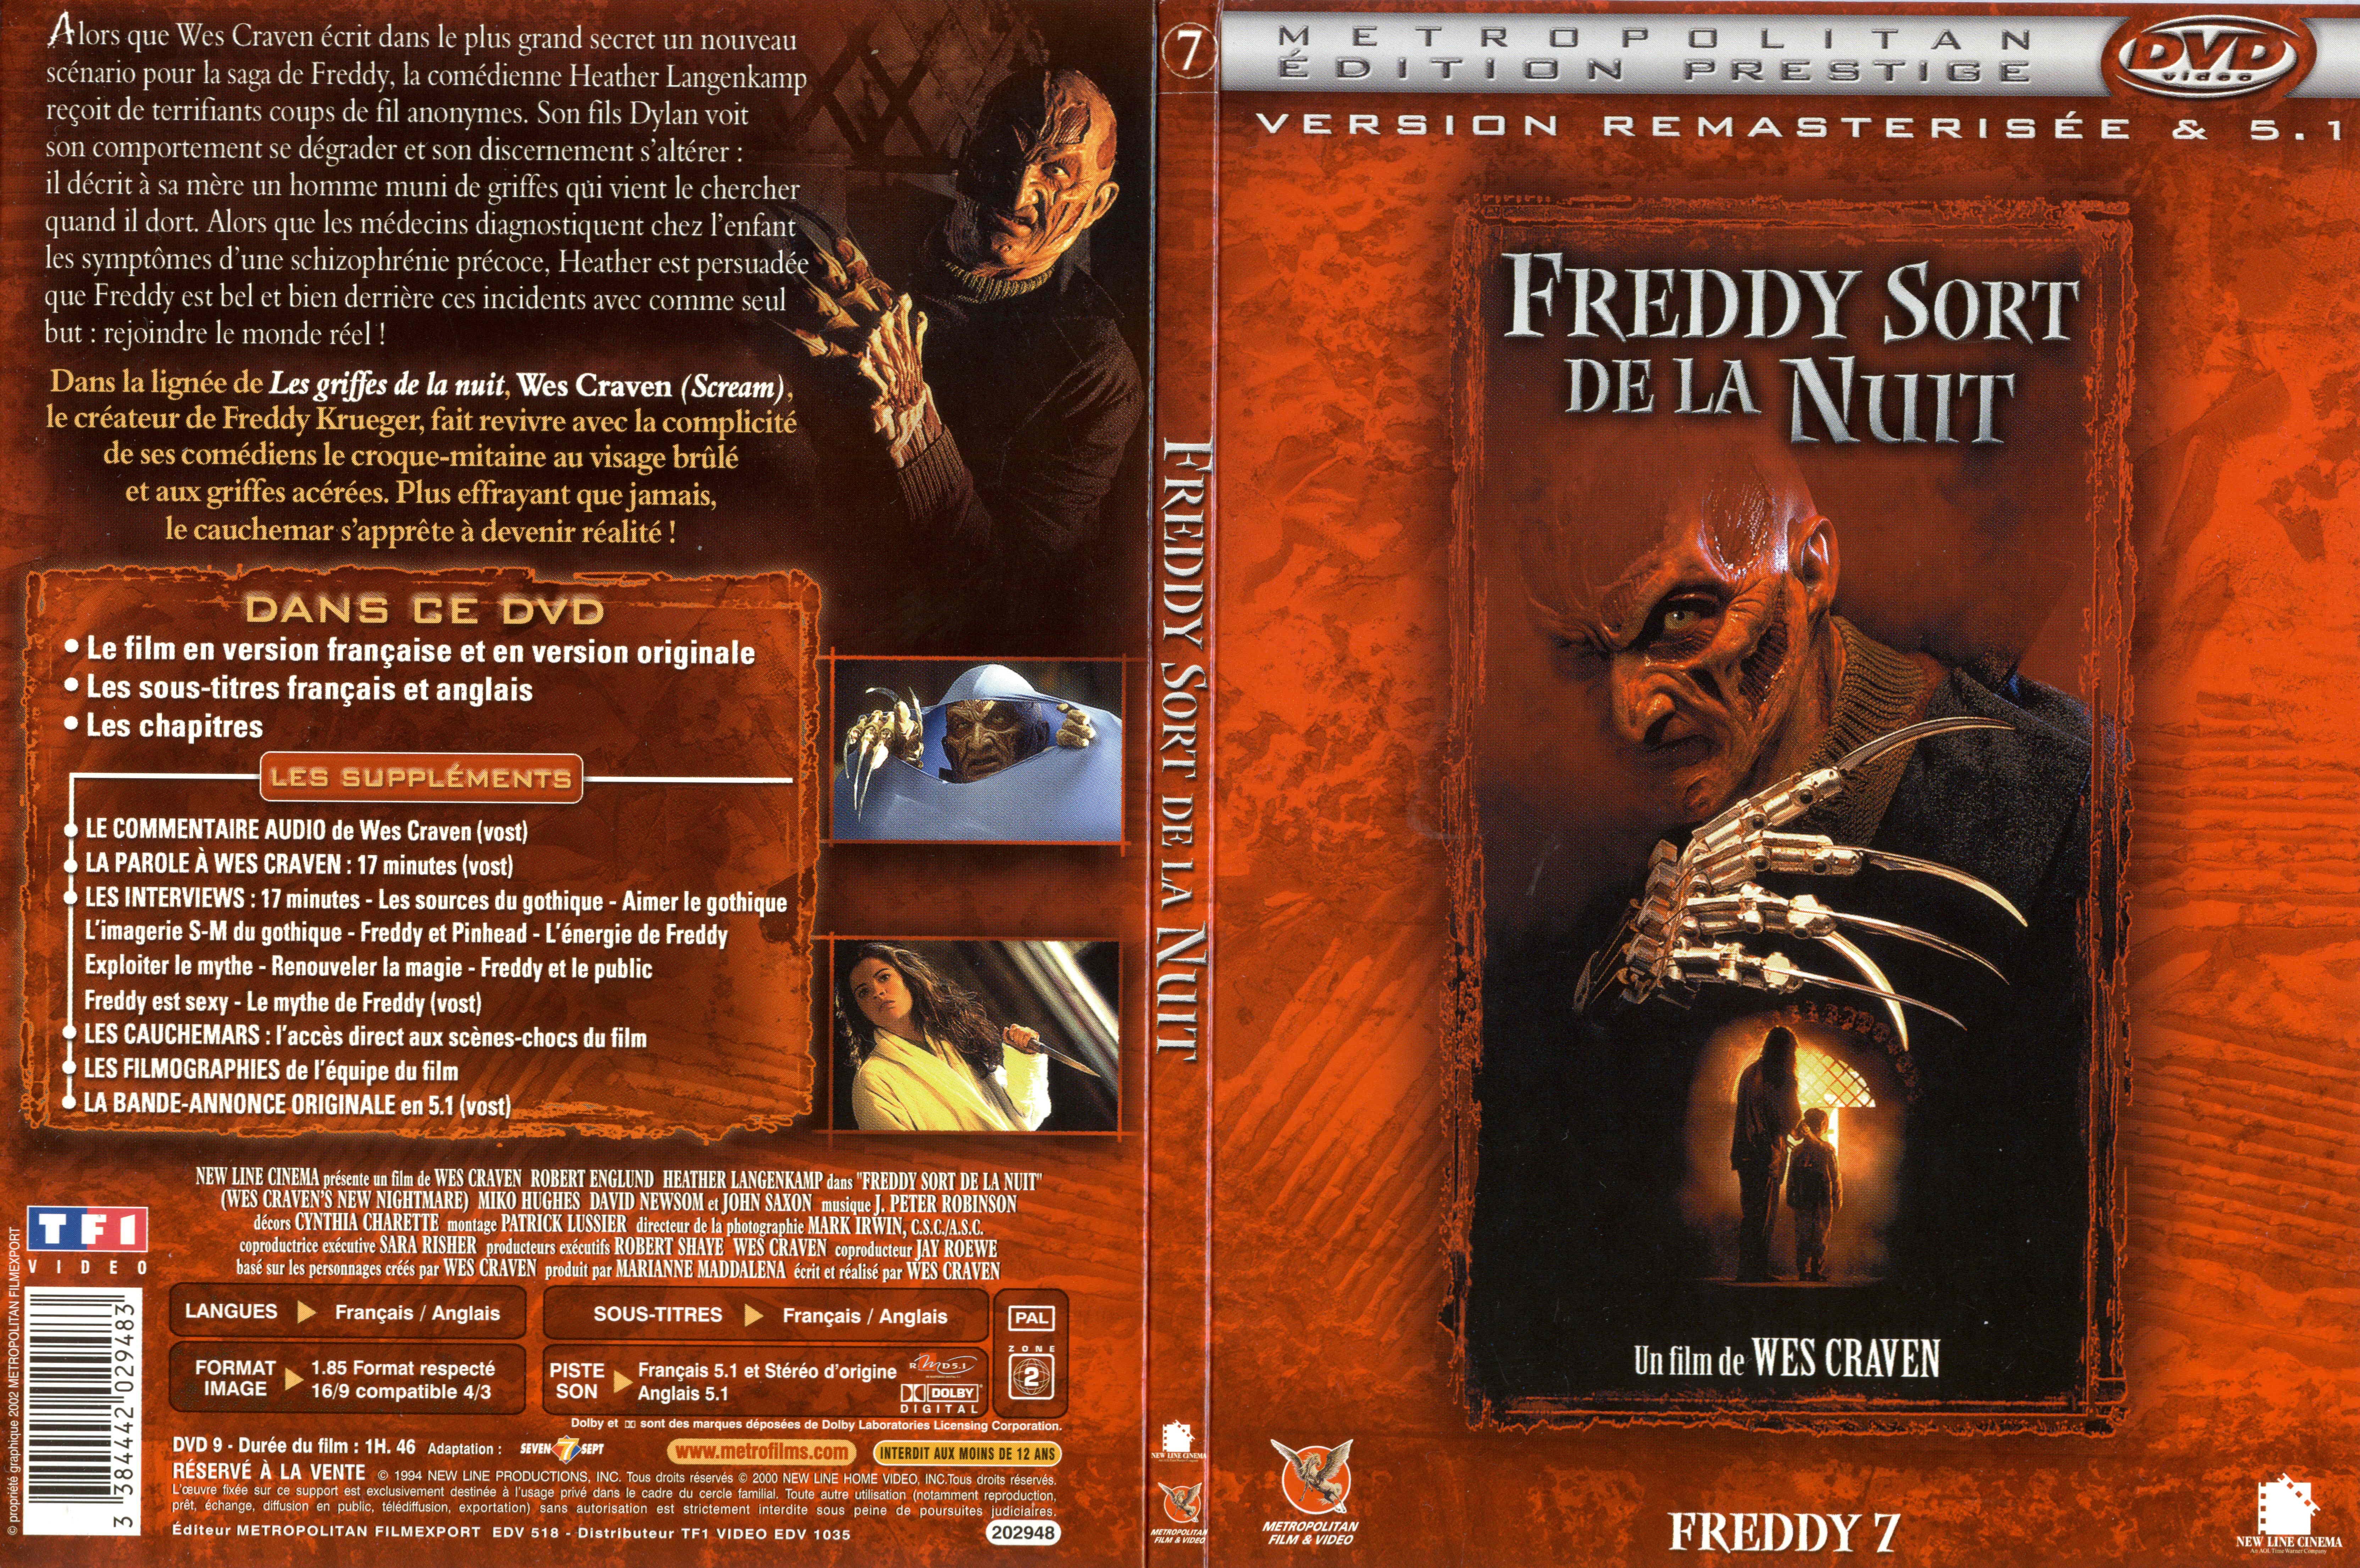 Jaquette DVD Freddy 7 freddy sort de la nuit